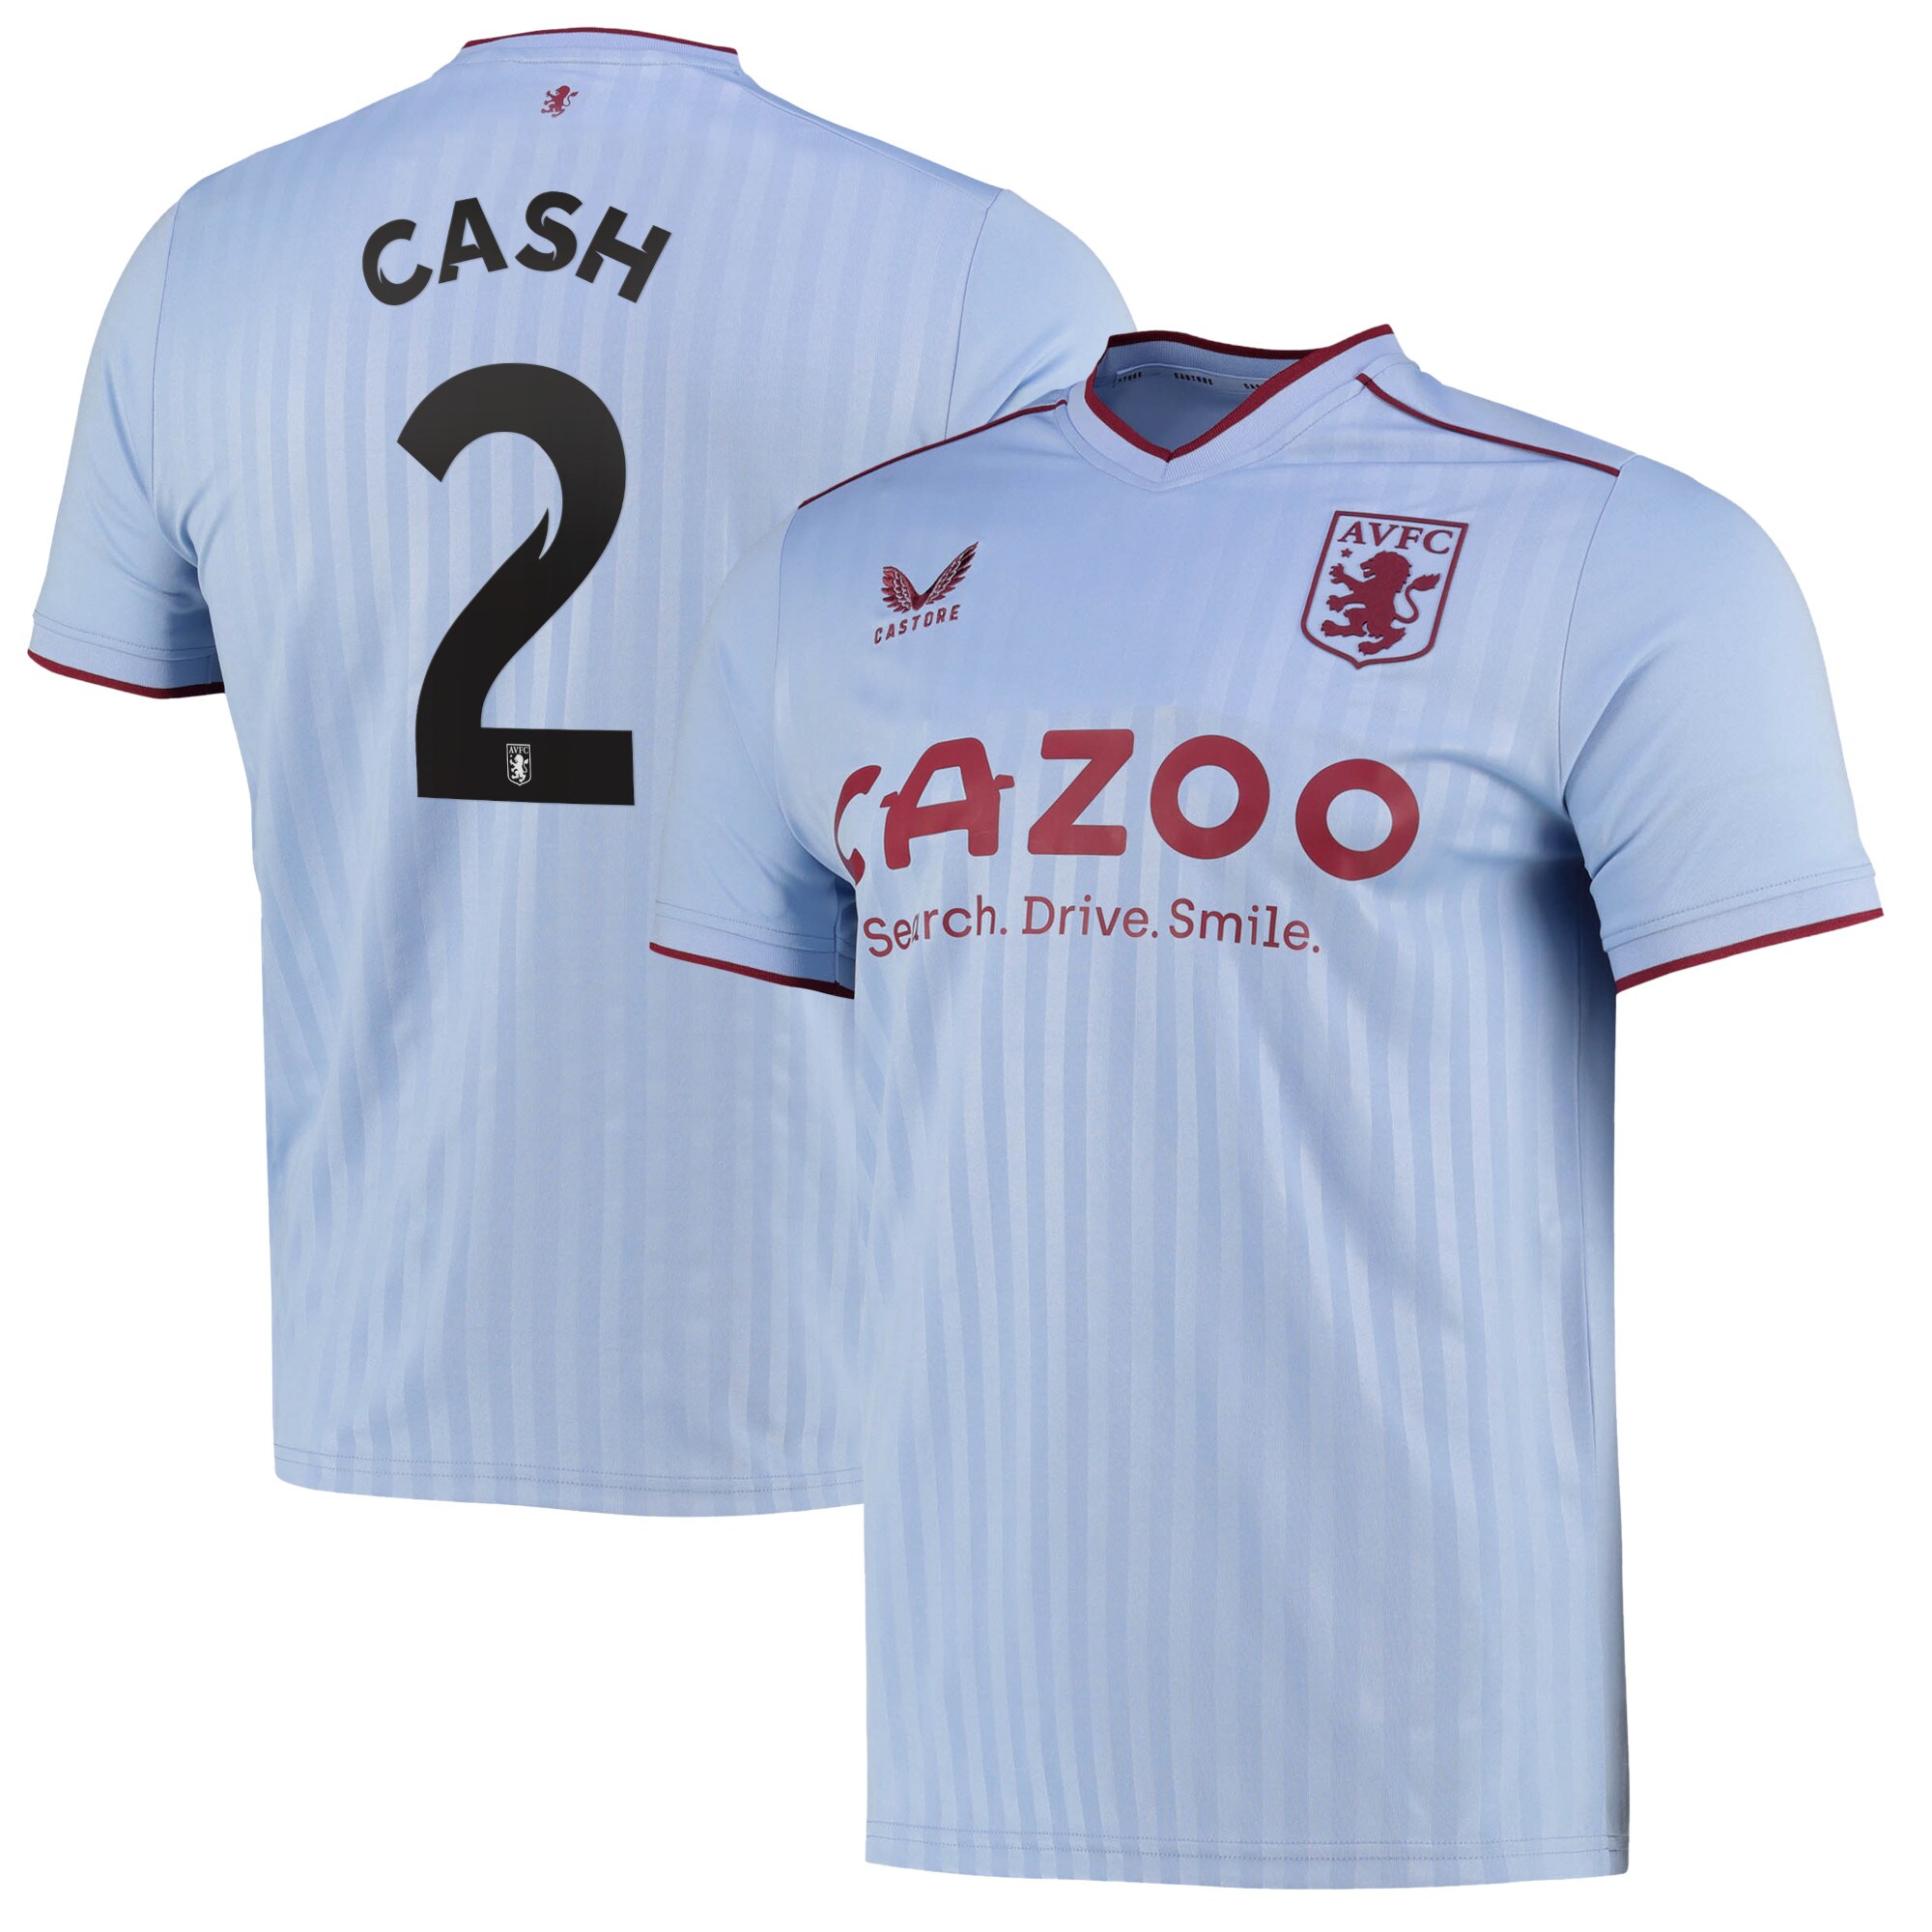 Aston Villa Cup Away Shirt 2022-23 with Cash 2 printing